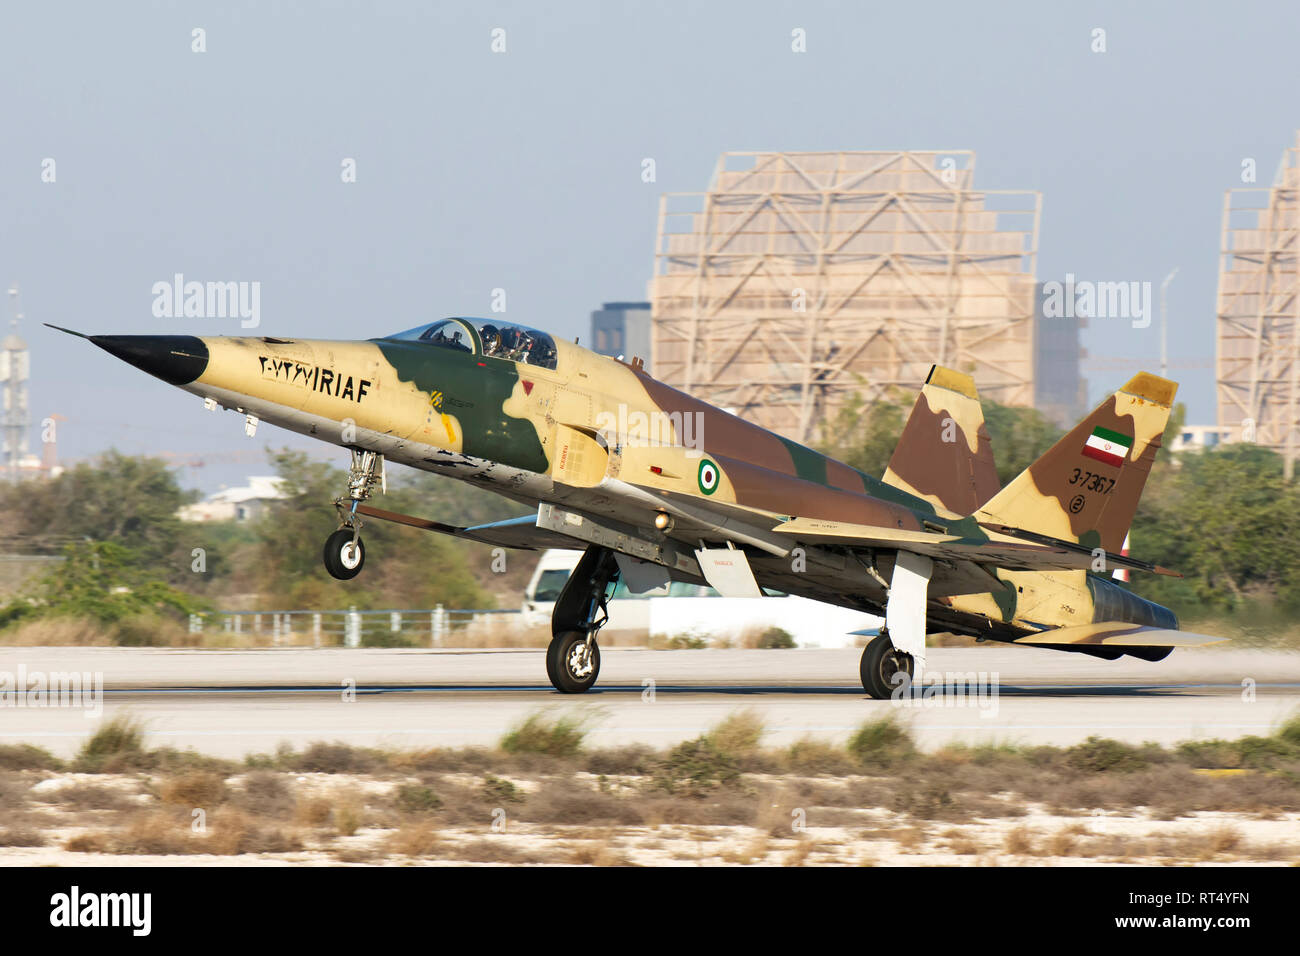 An Islamic Republic of Iran Air Force Saegheh I aircraft landing at Kish International airport. Stock Photo